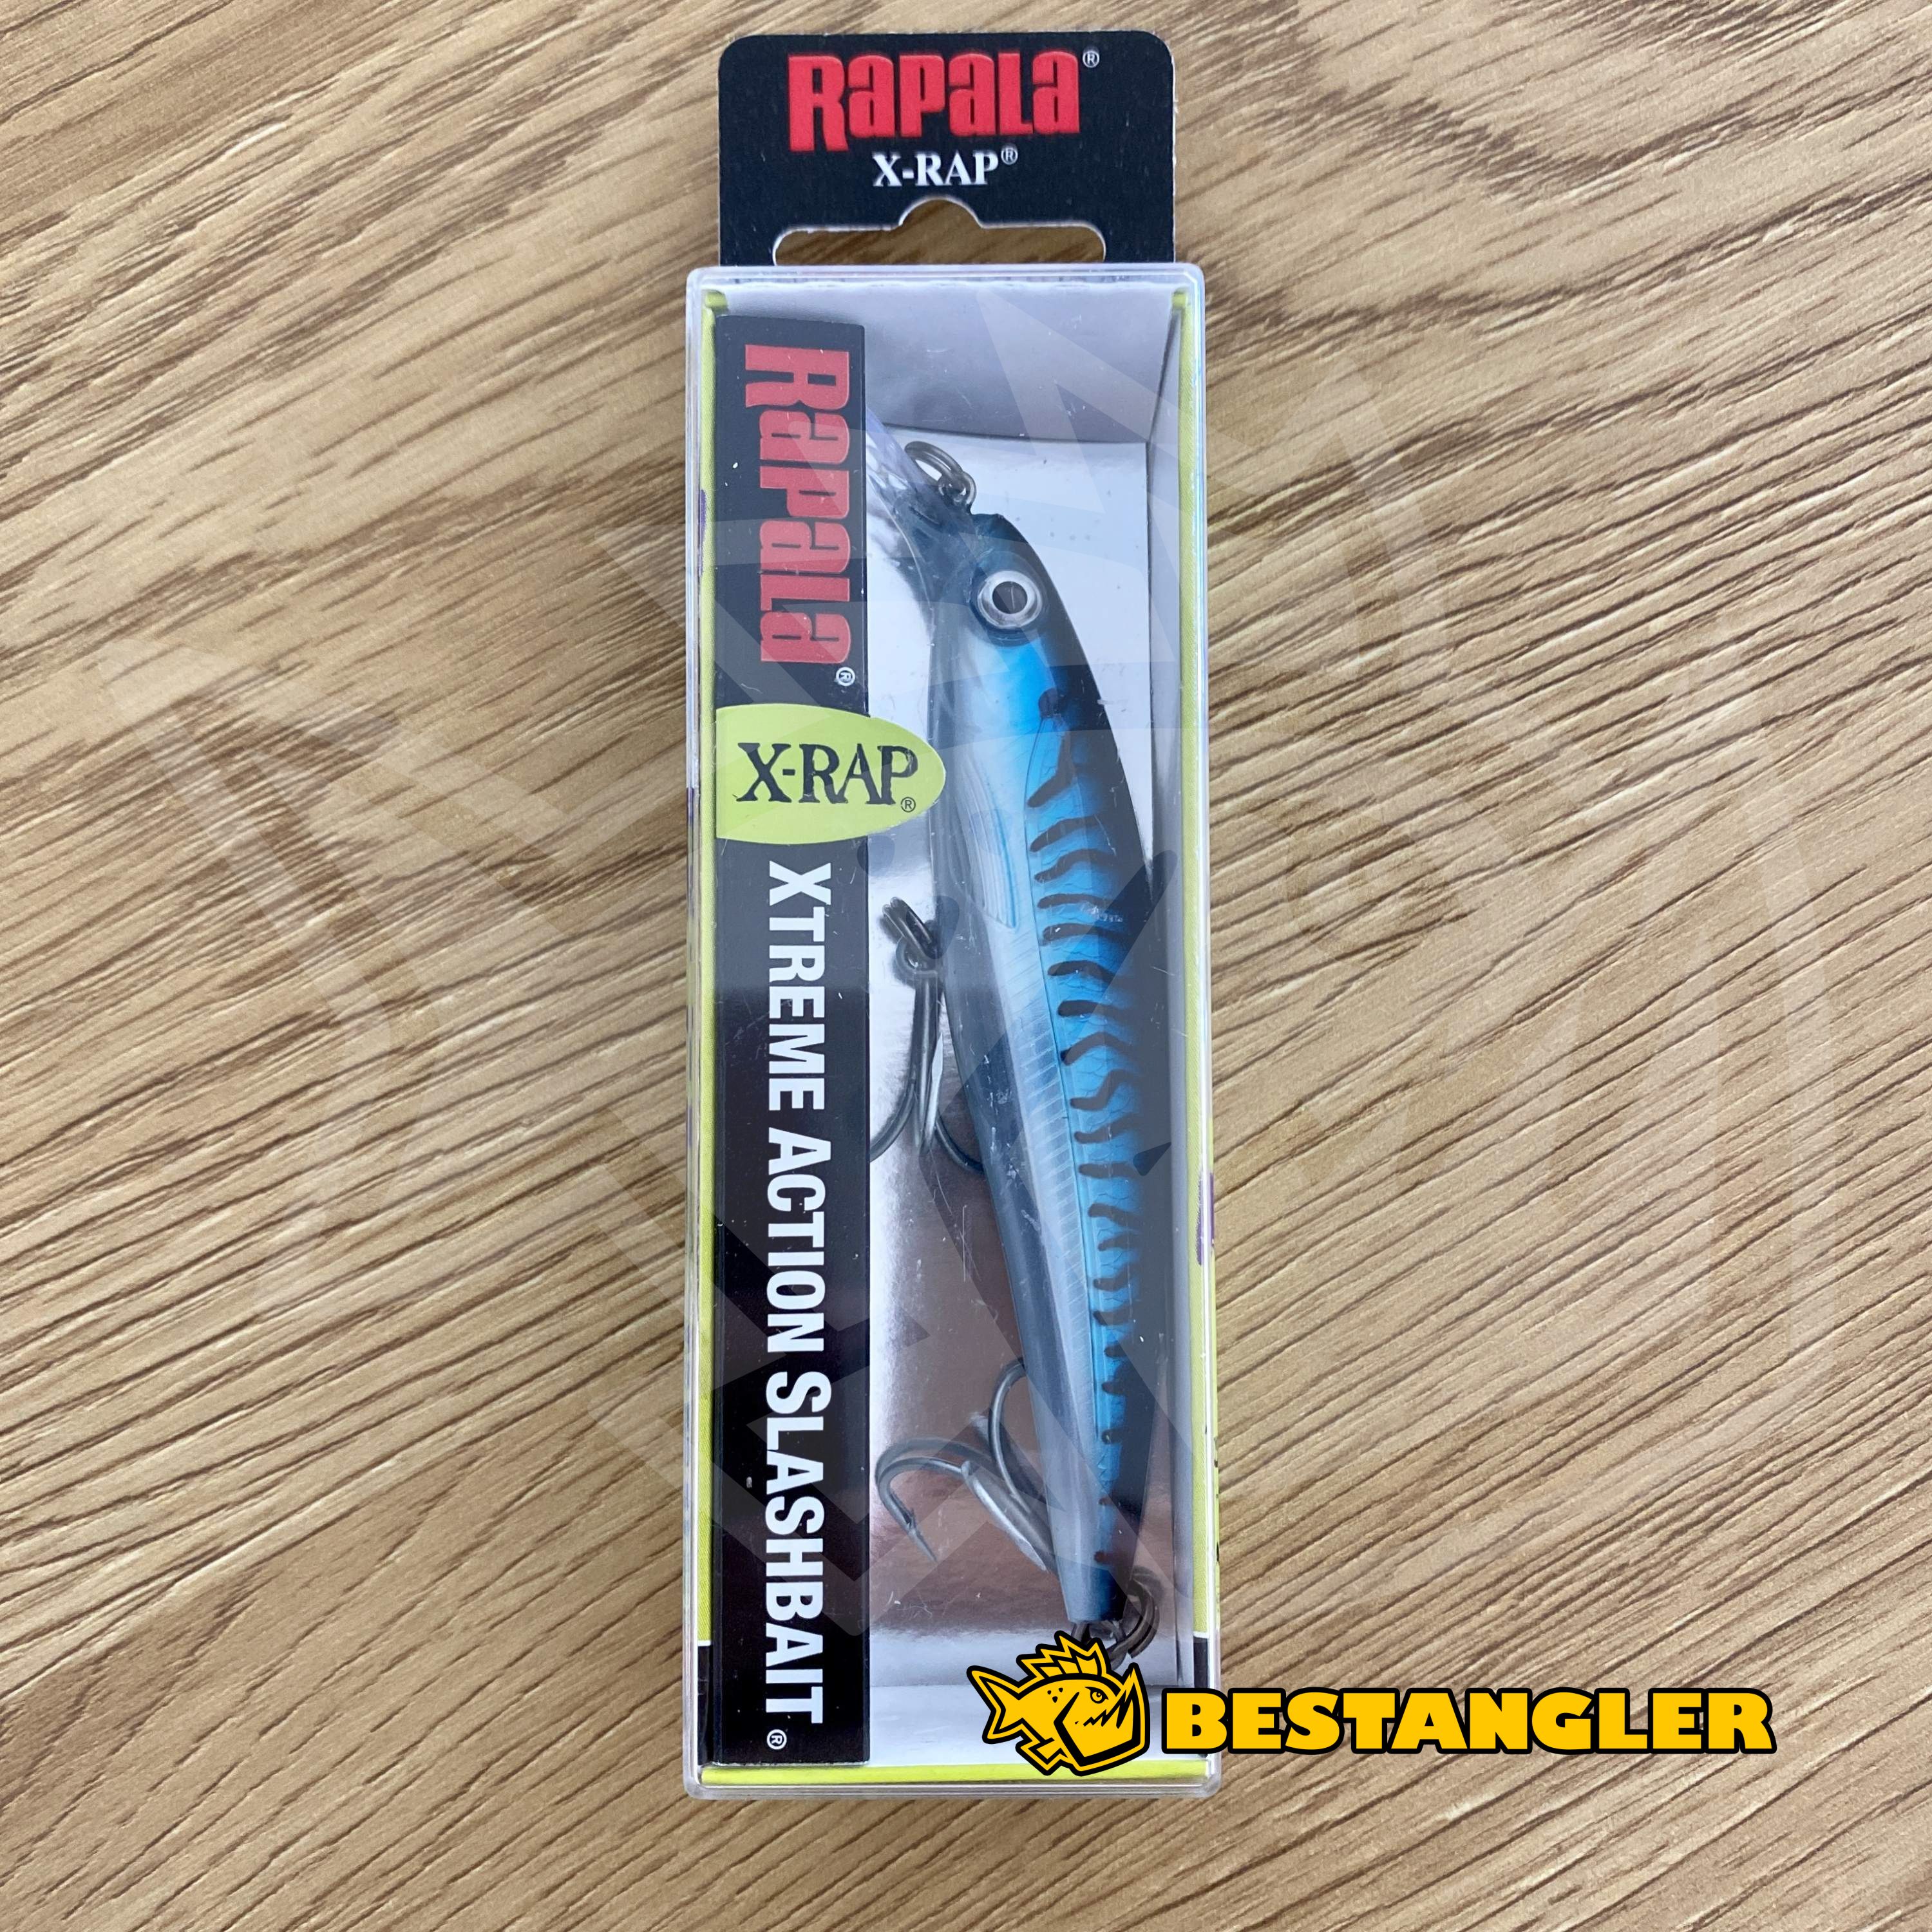 Rapala X-Rap Saltwater 10 Silver Blue Mackerel